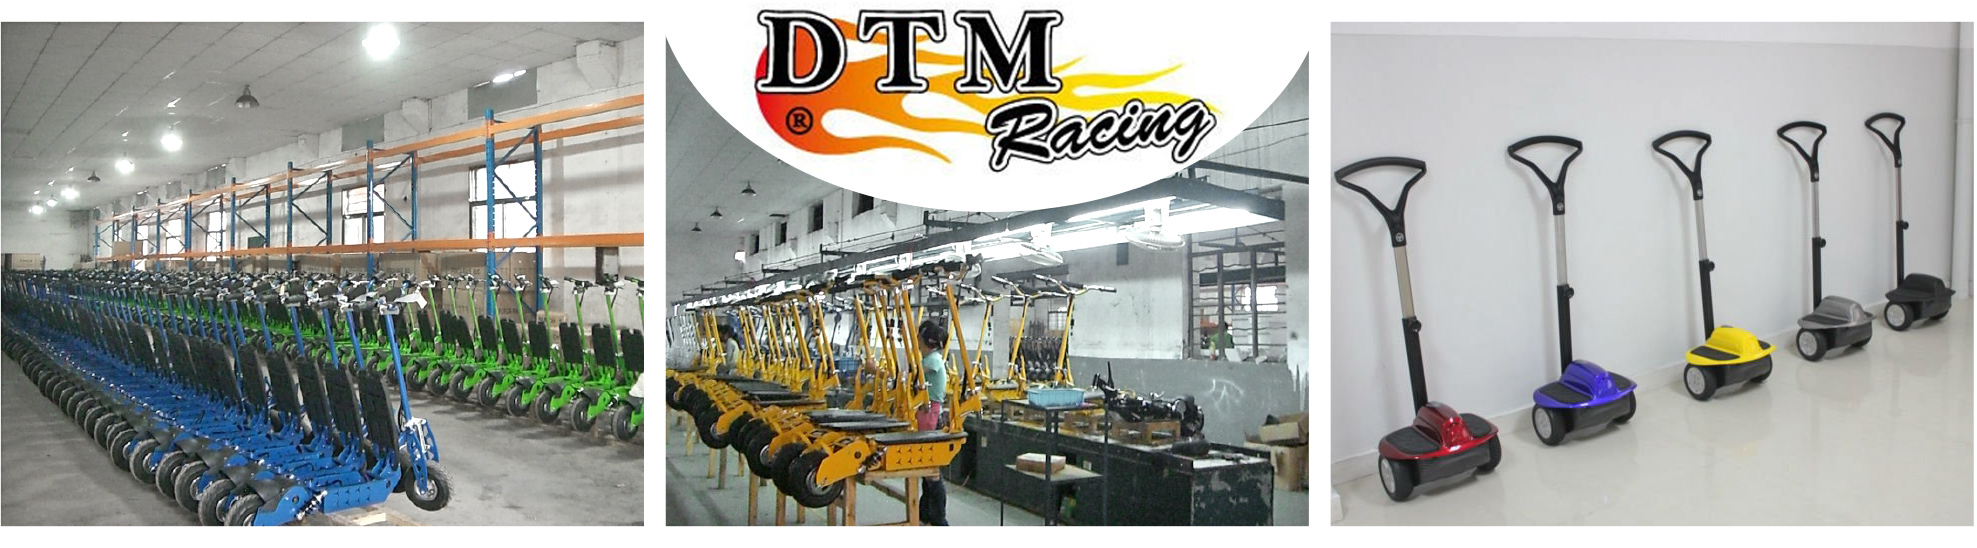 dtm racing